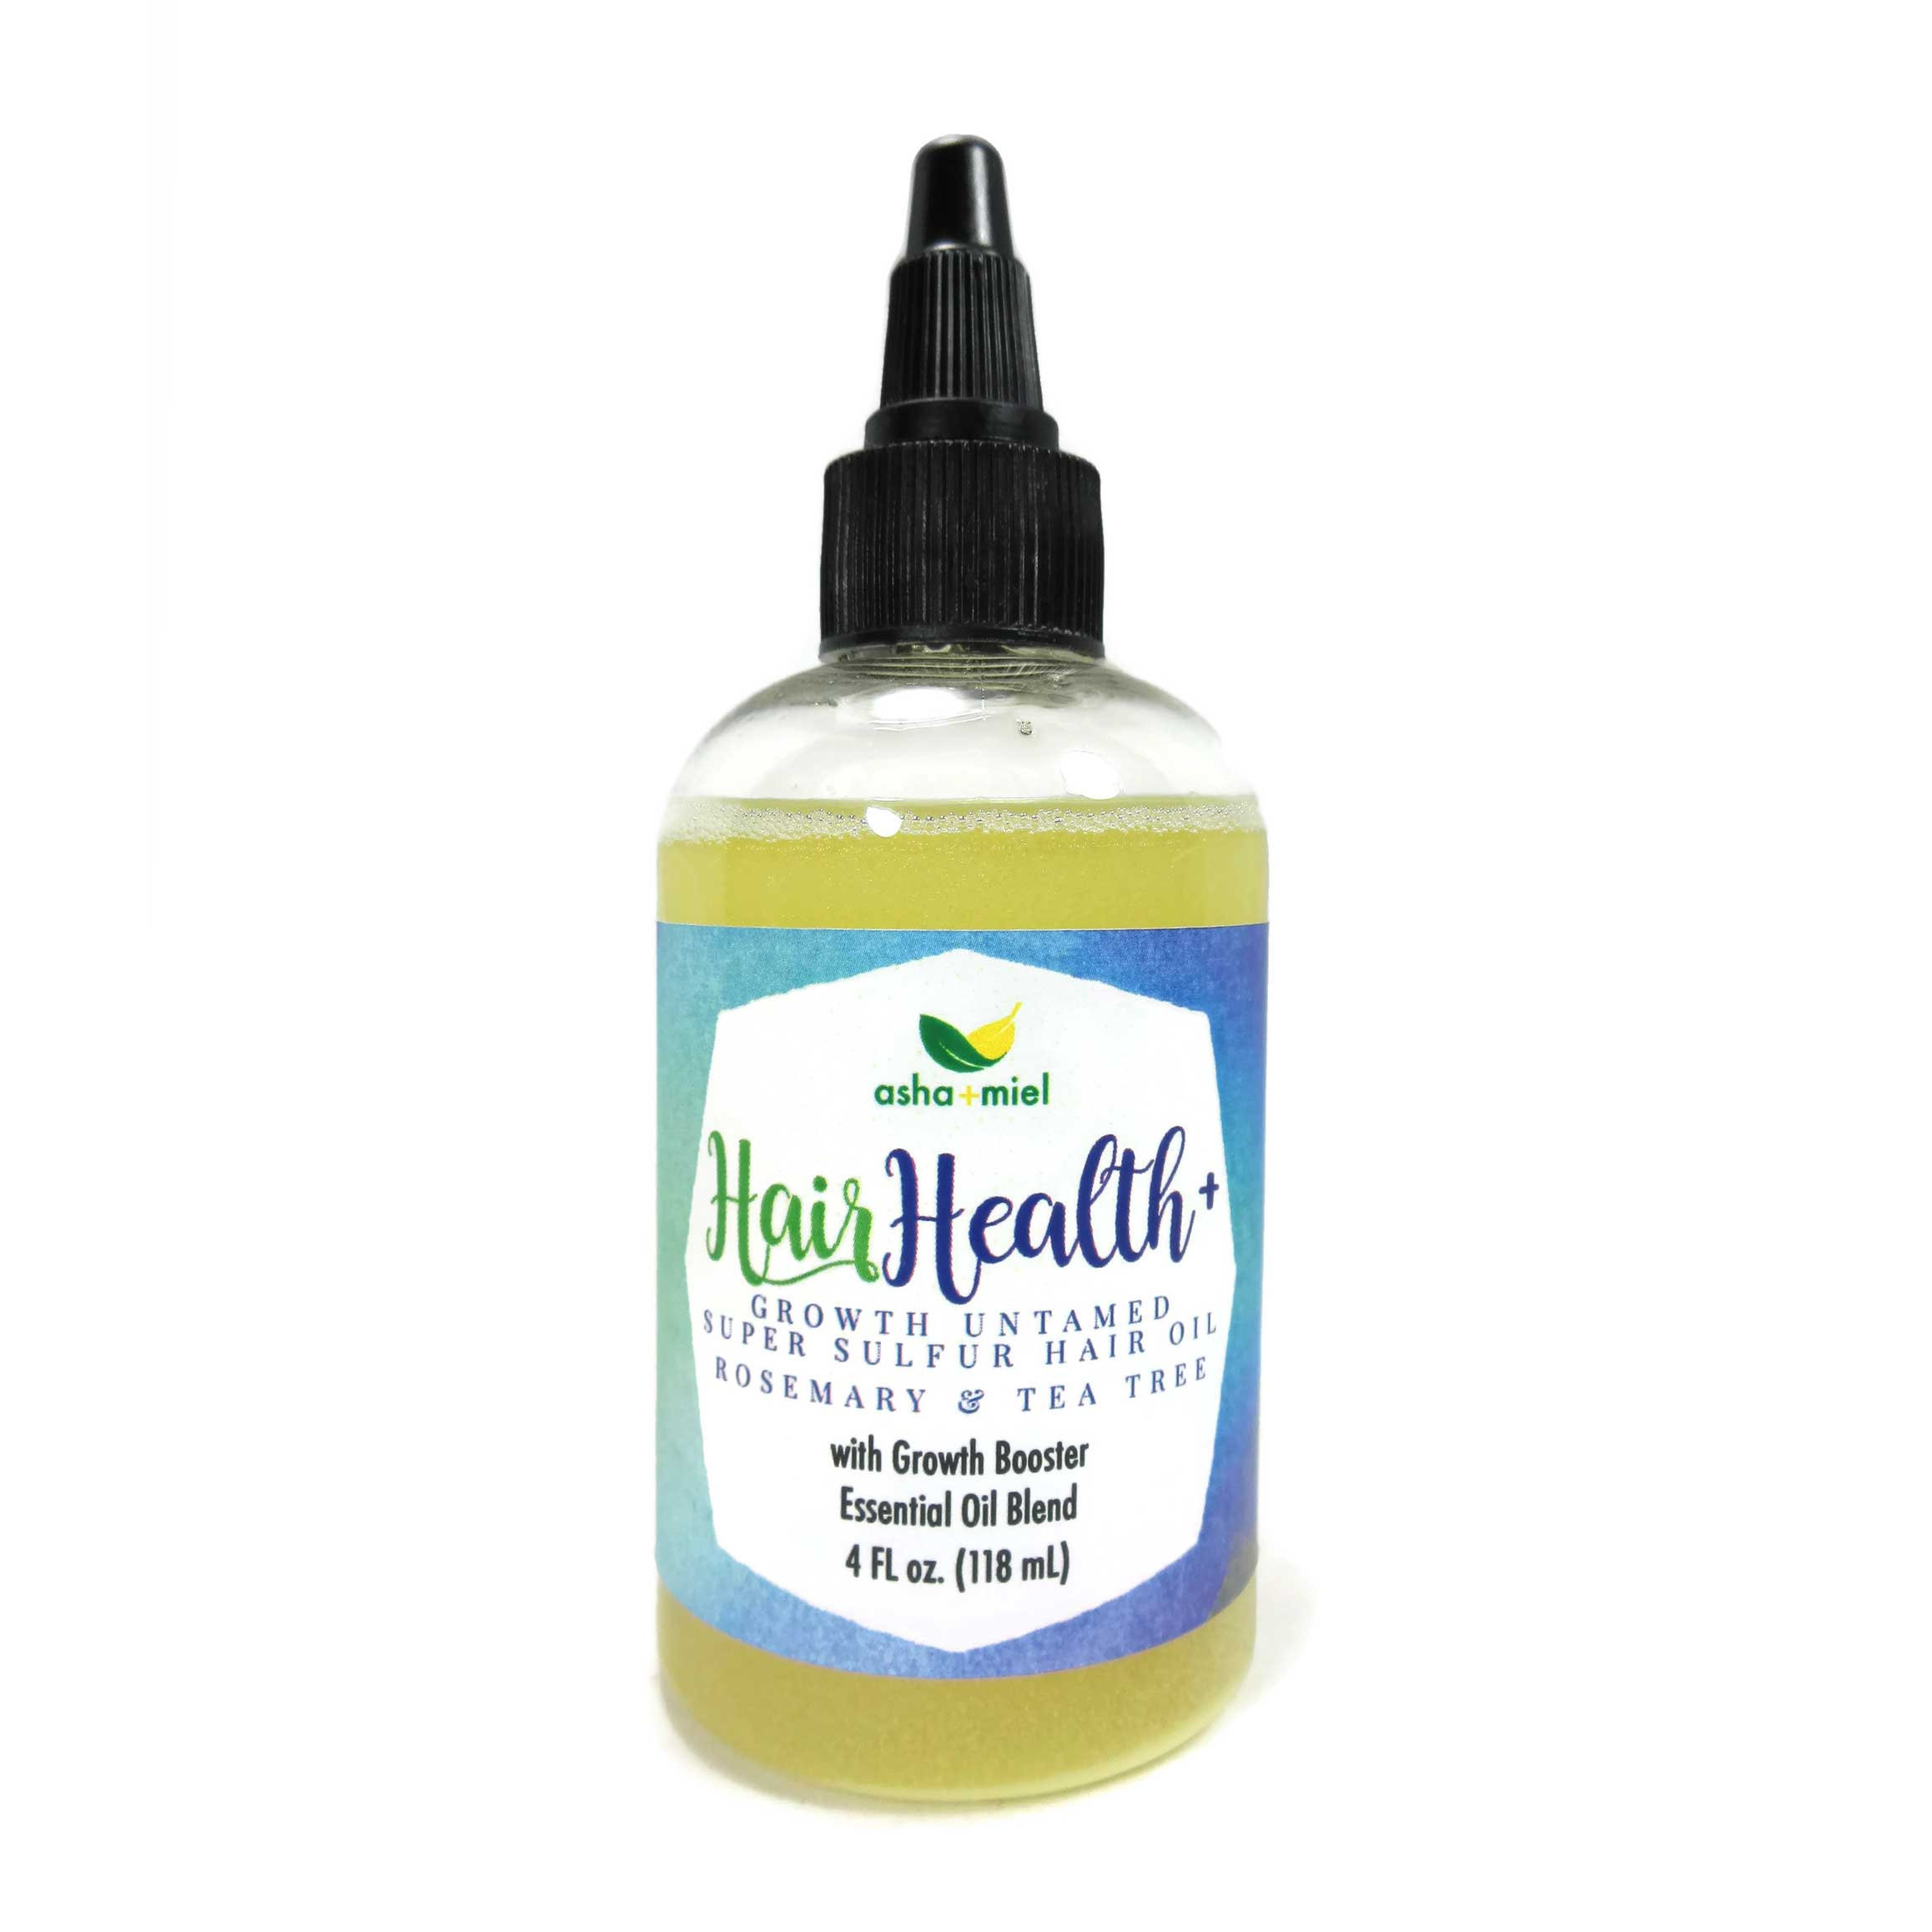 Growth Untamed Super Sulfur Hair Oil - Rosemary & Tea Tree, 4 oz, Hair Growth, Castor hair oil